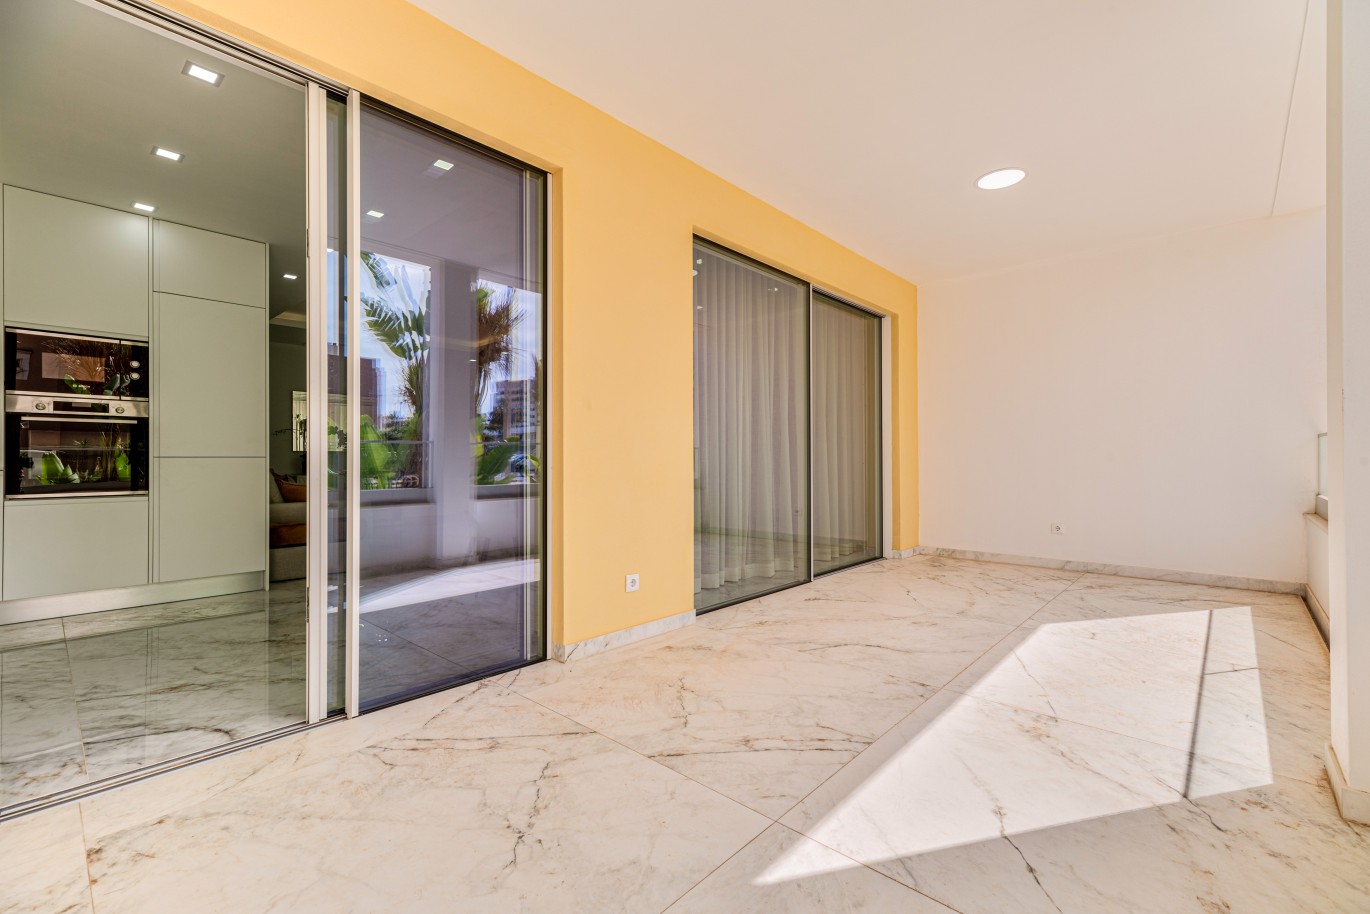 Apartamento, com terraço, para venda, em Lagos, Algarve_238258